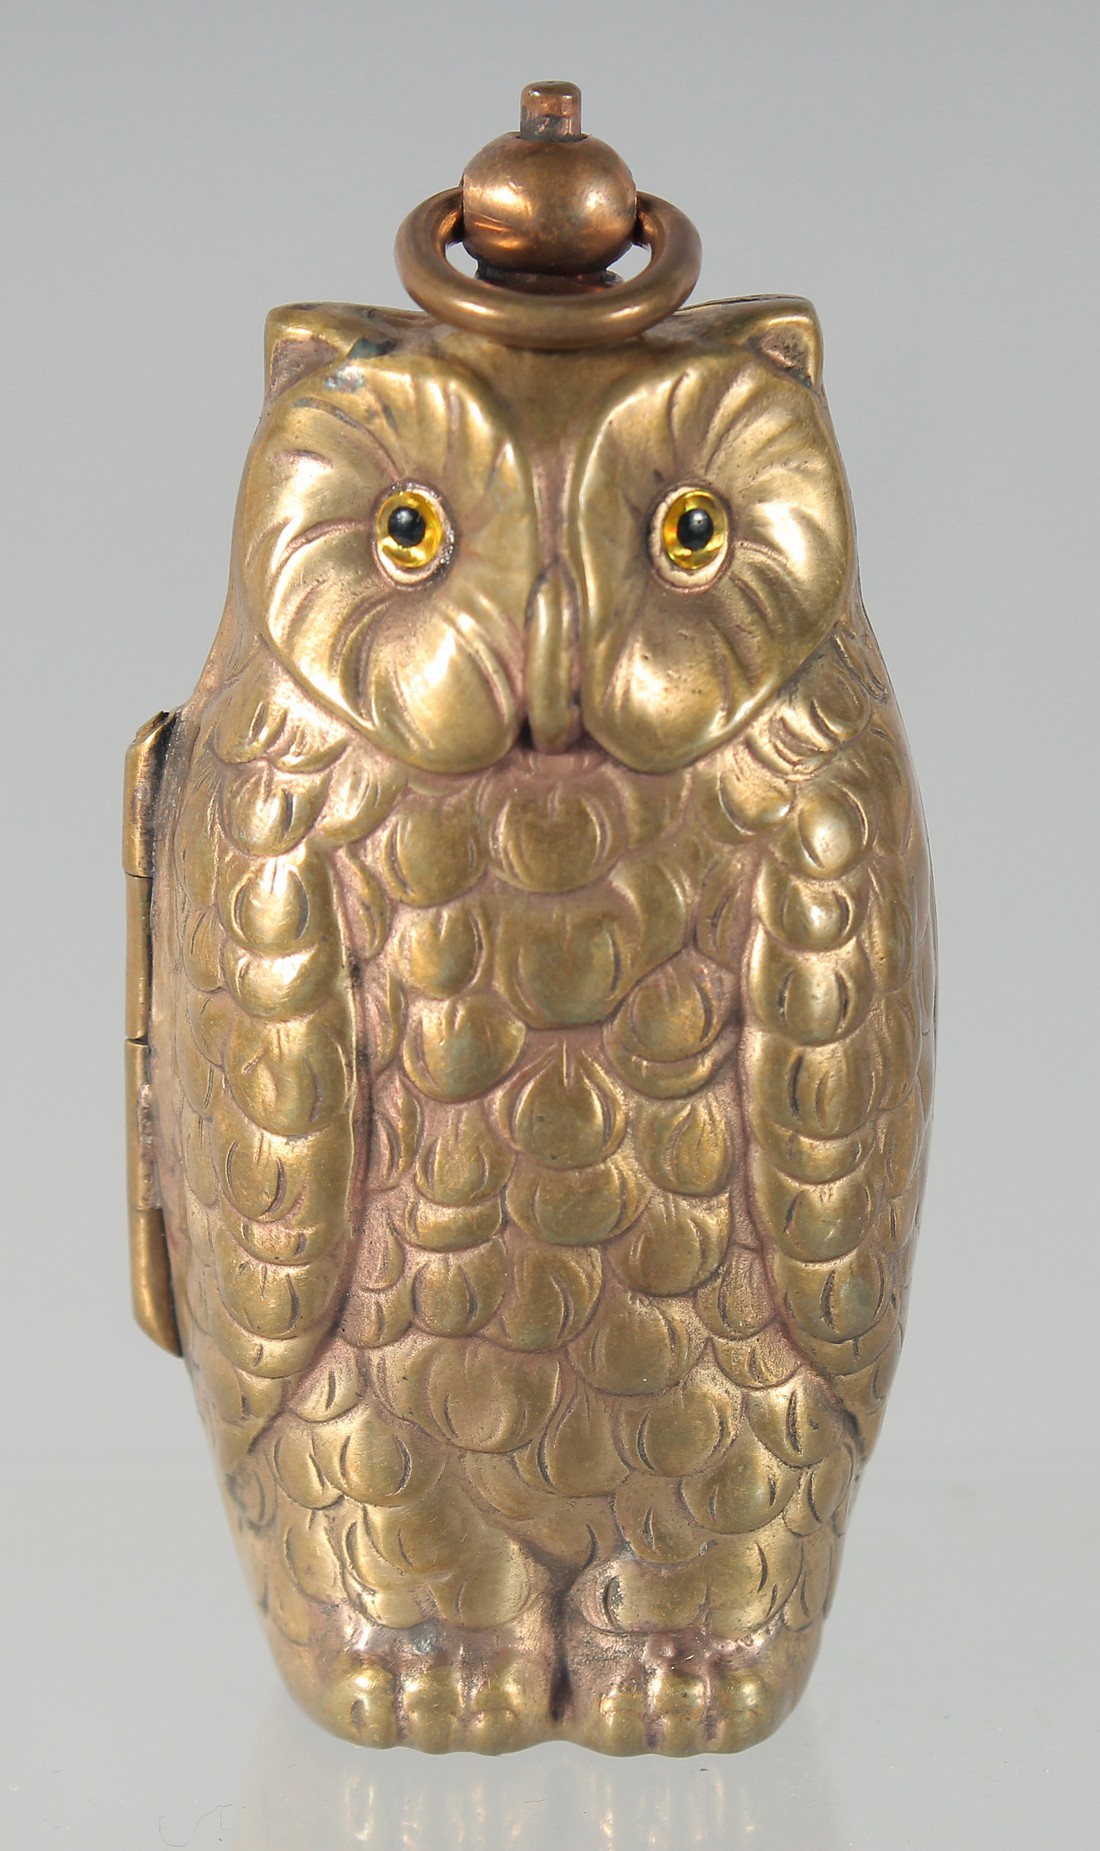 A BRASS OWL DOUBLE SOVEREIGN CASE. 6cm